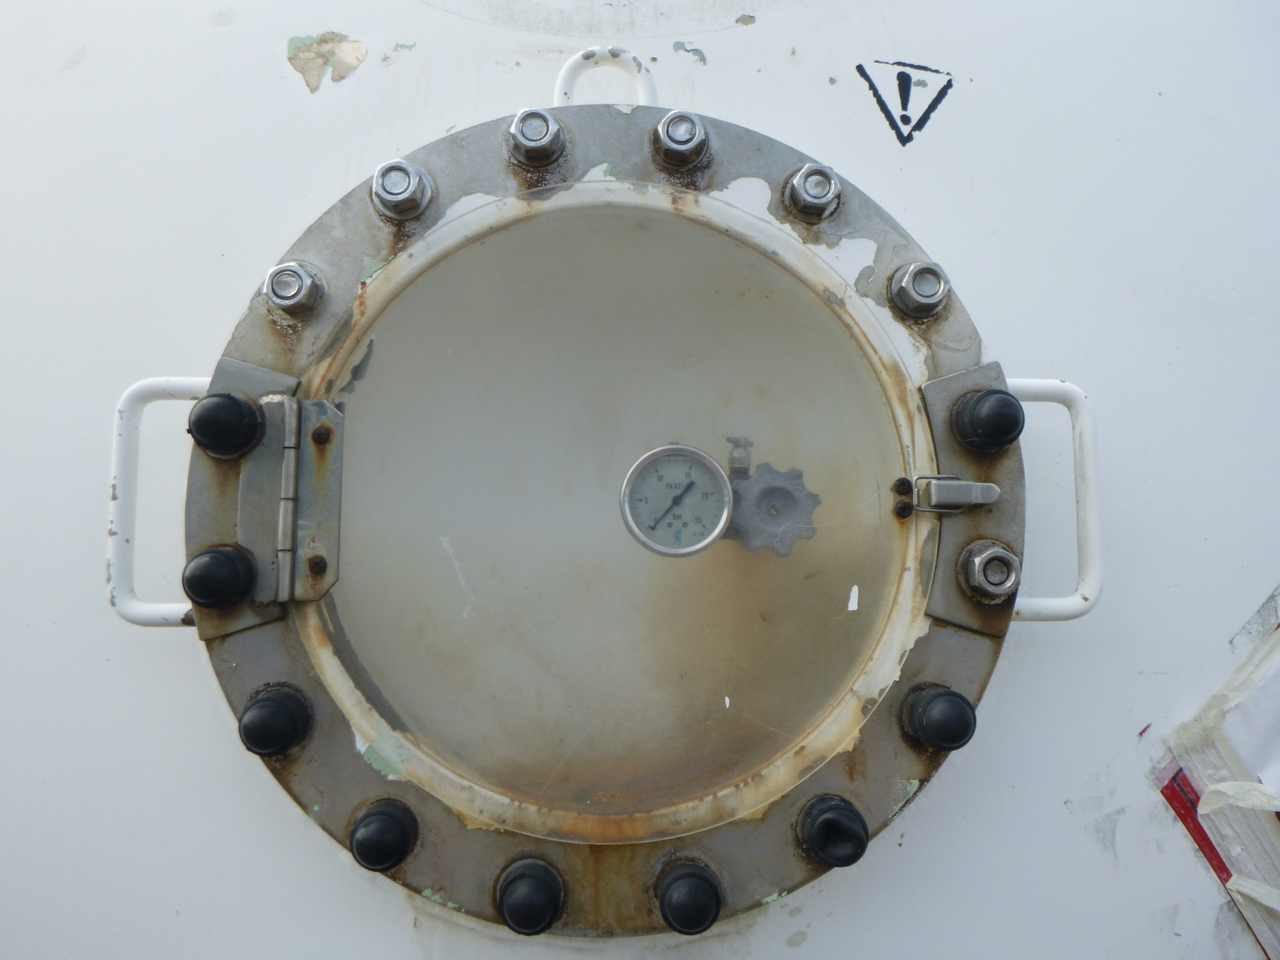 Cisterna semirremolque para transporte de gas Guhur Low-pressure gas tank steel 31.5 m3 / 10 bar (methyl chloride): foto 12